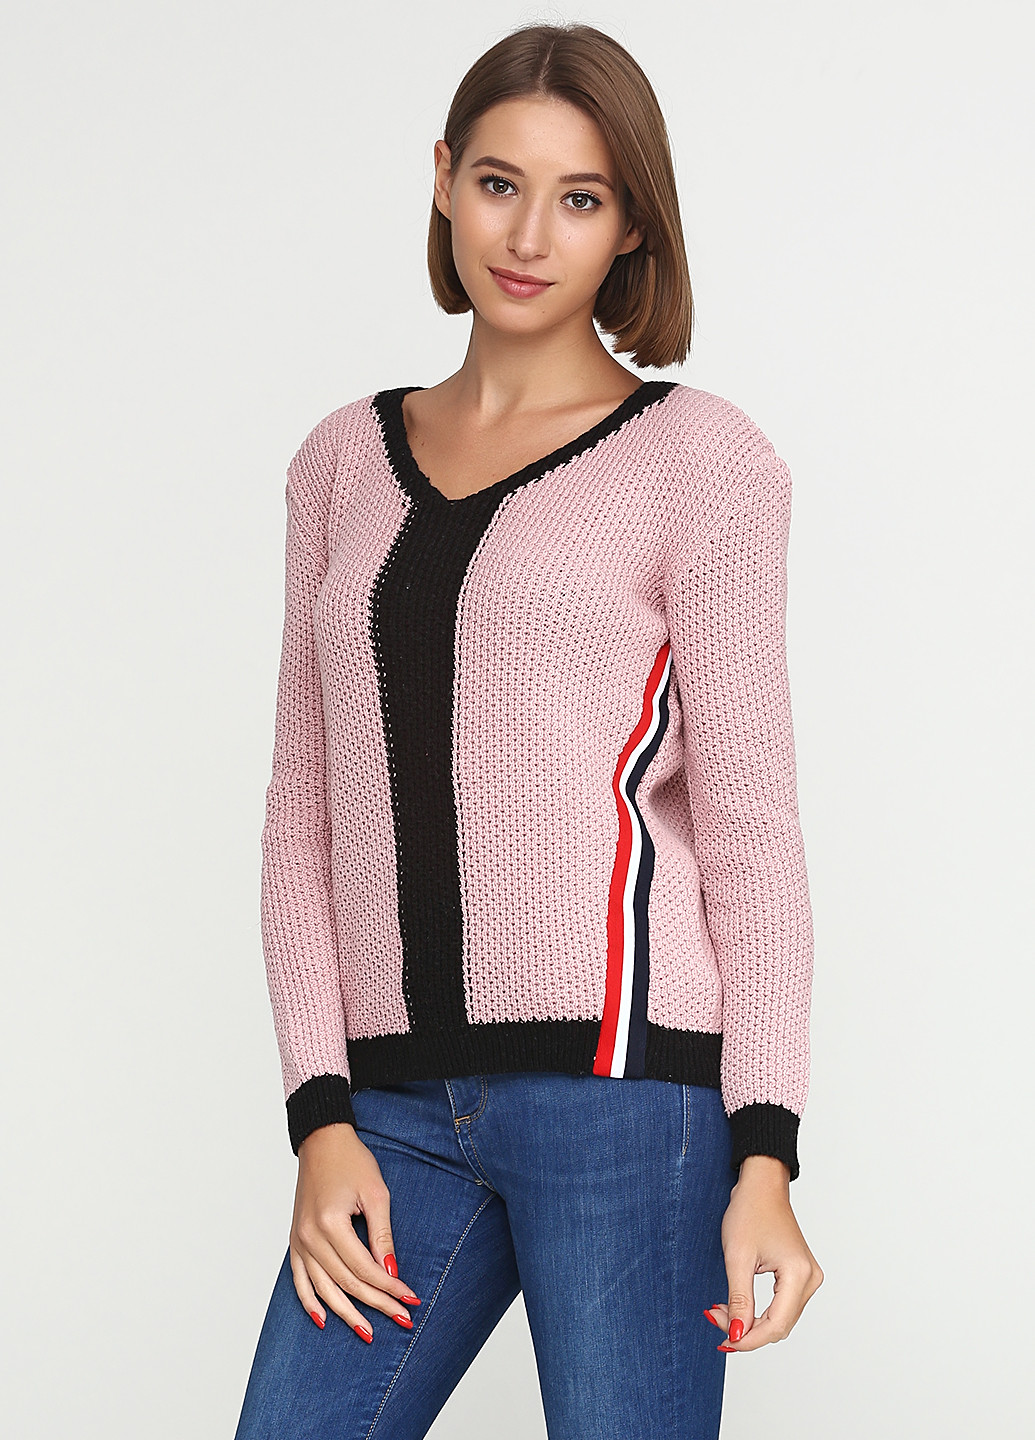 Светло-розовый демисезонный пуловер пуловер Edda